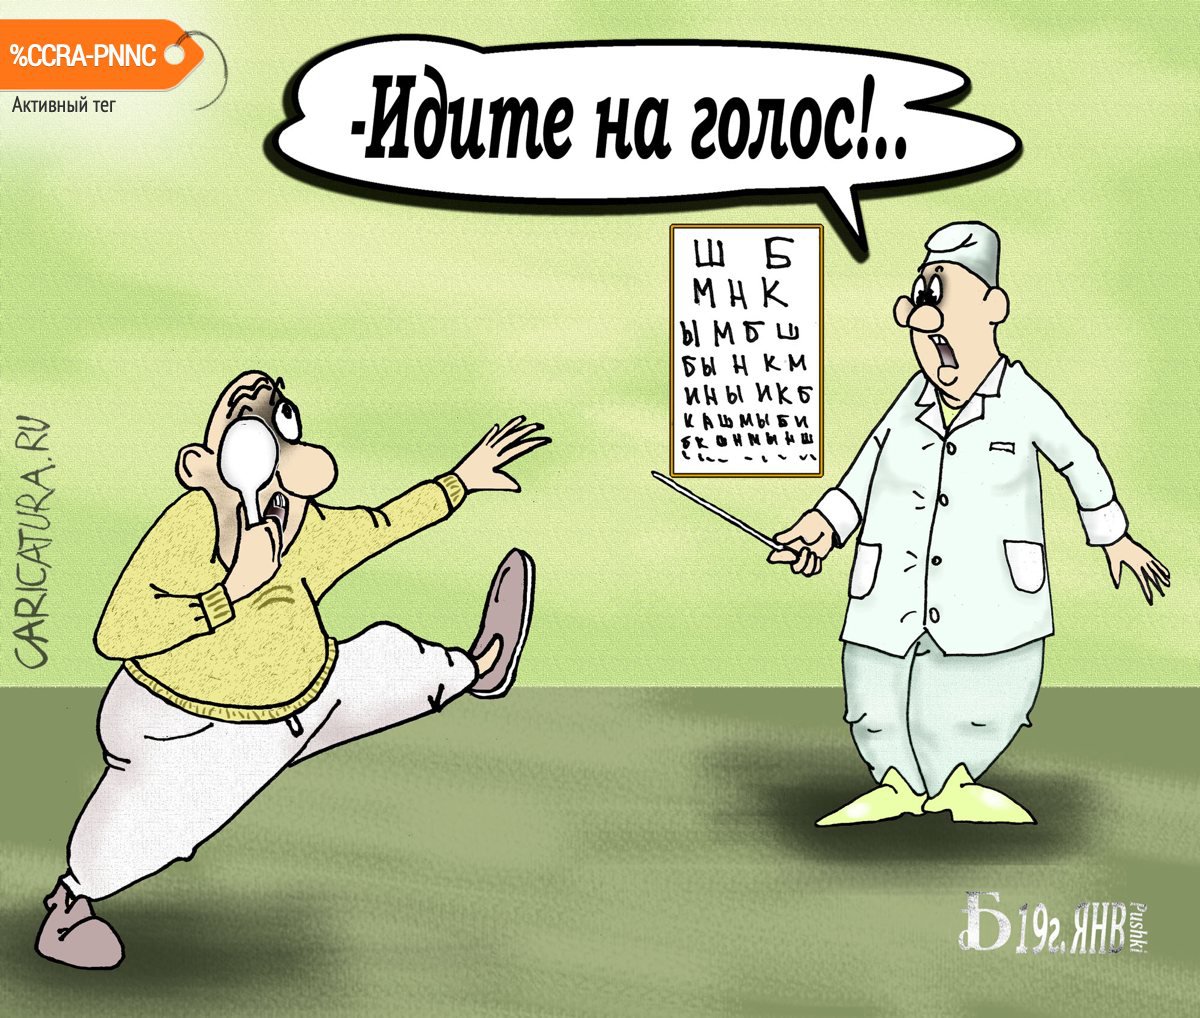 Карикатура "Про голос", Борис Демин